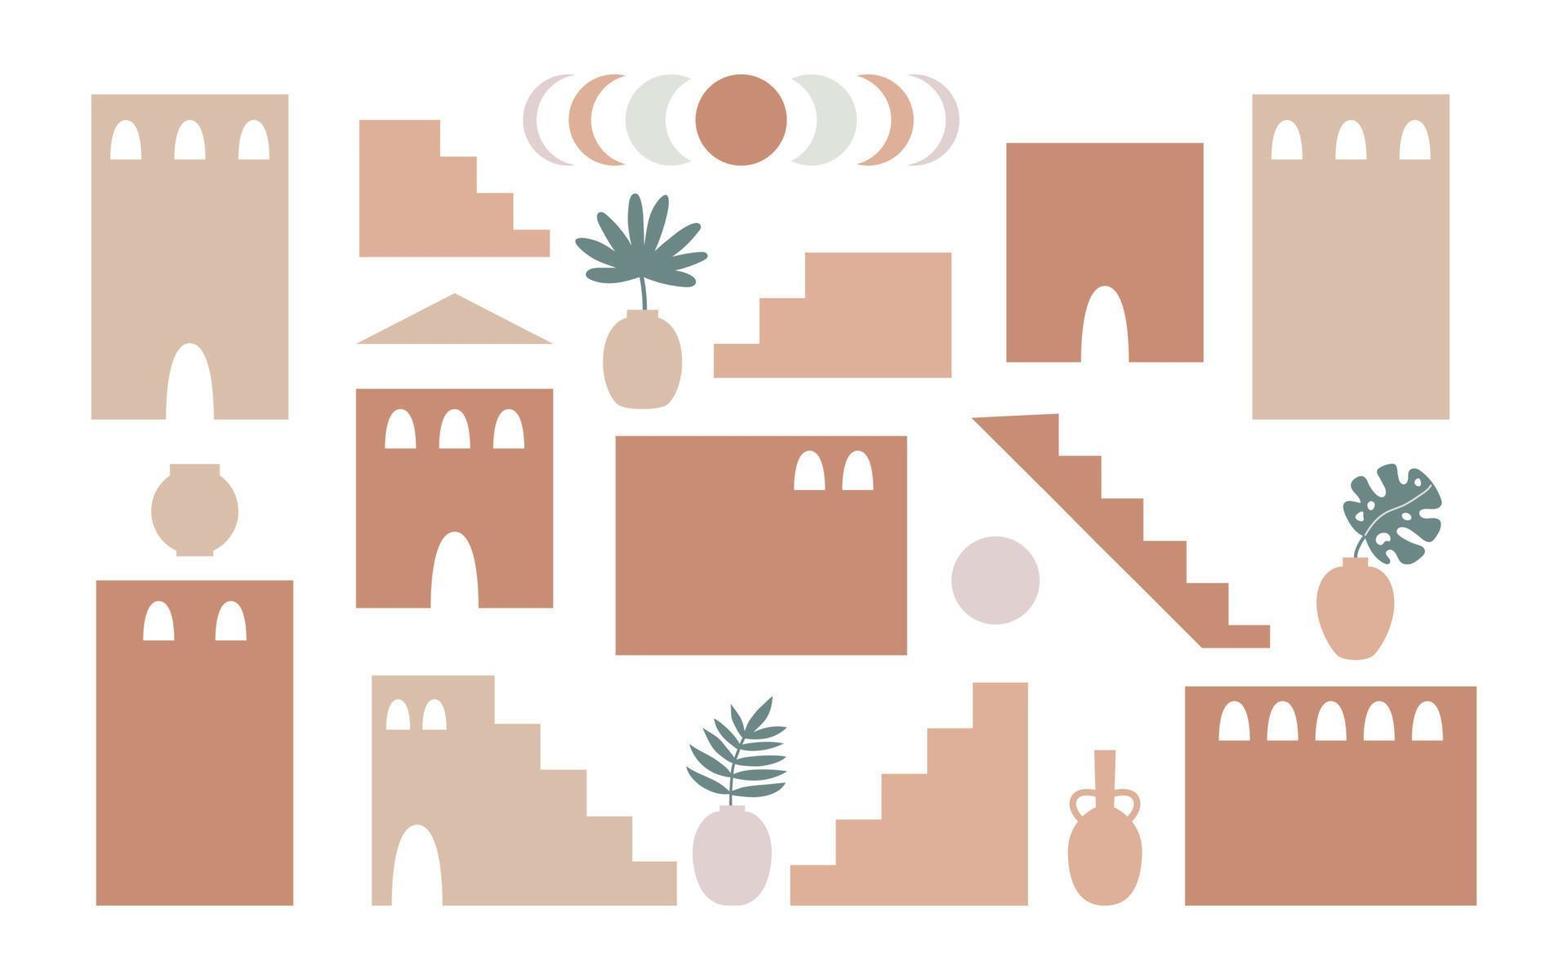 boho-stilsatz von geometriearchitekturelementen. abstrakte gebäude mit marokkanischen treppen, wänden, bögen, pflanzen in töpfen, sonne und monden. zeitgenössische ästhetische vektorillustration. vektor